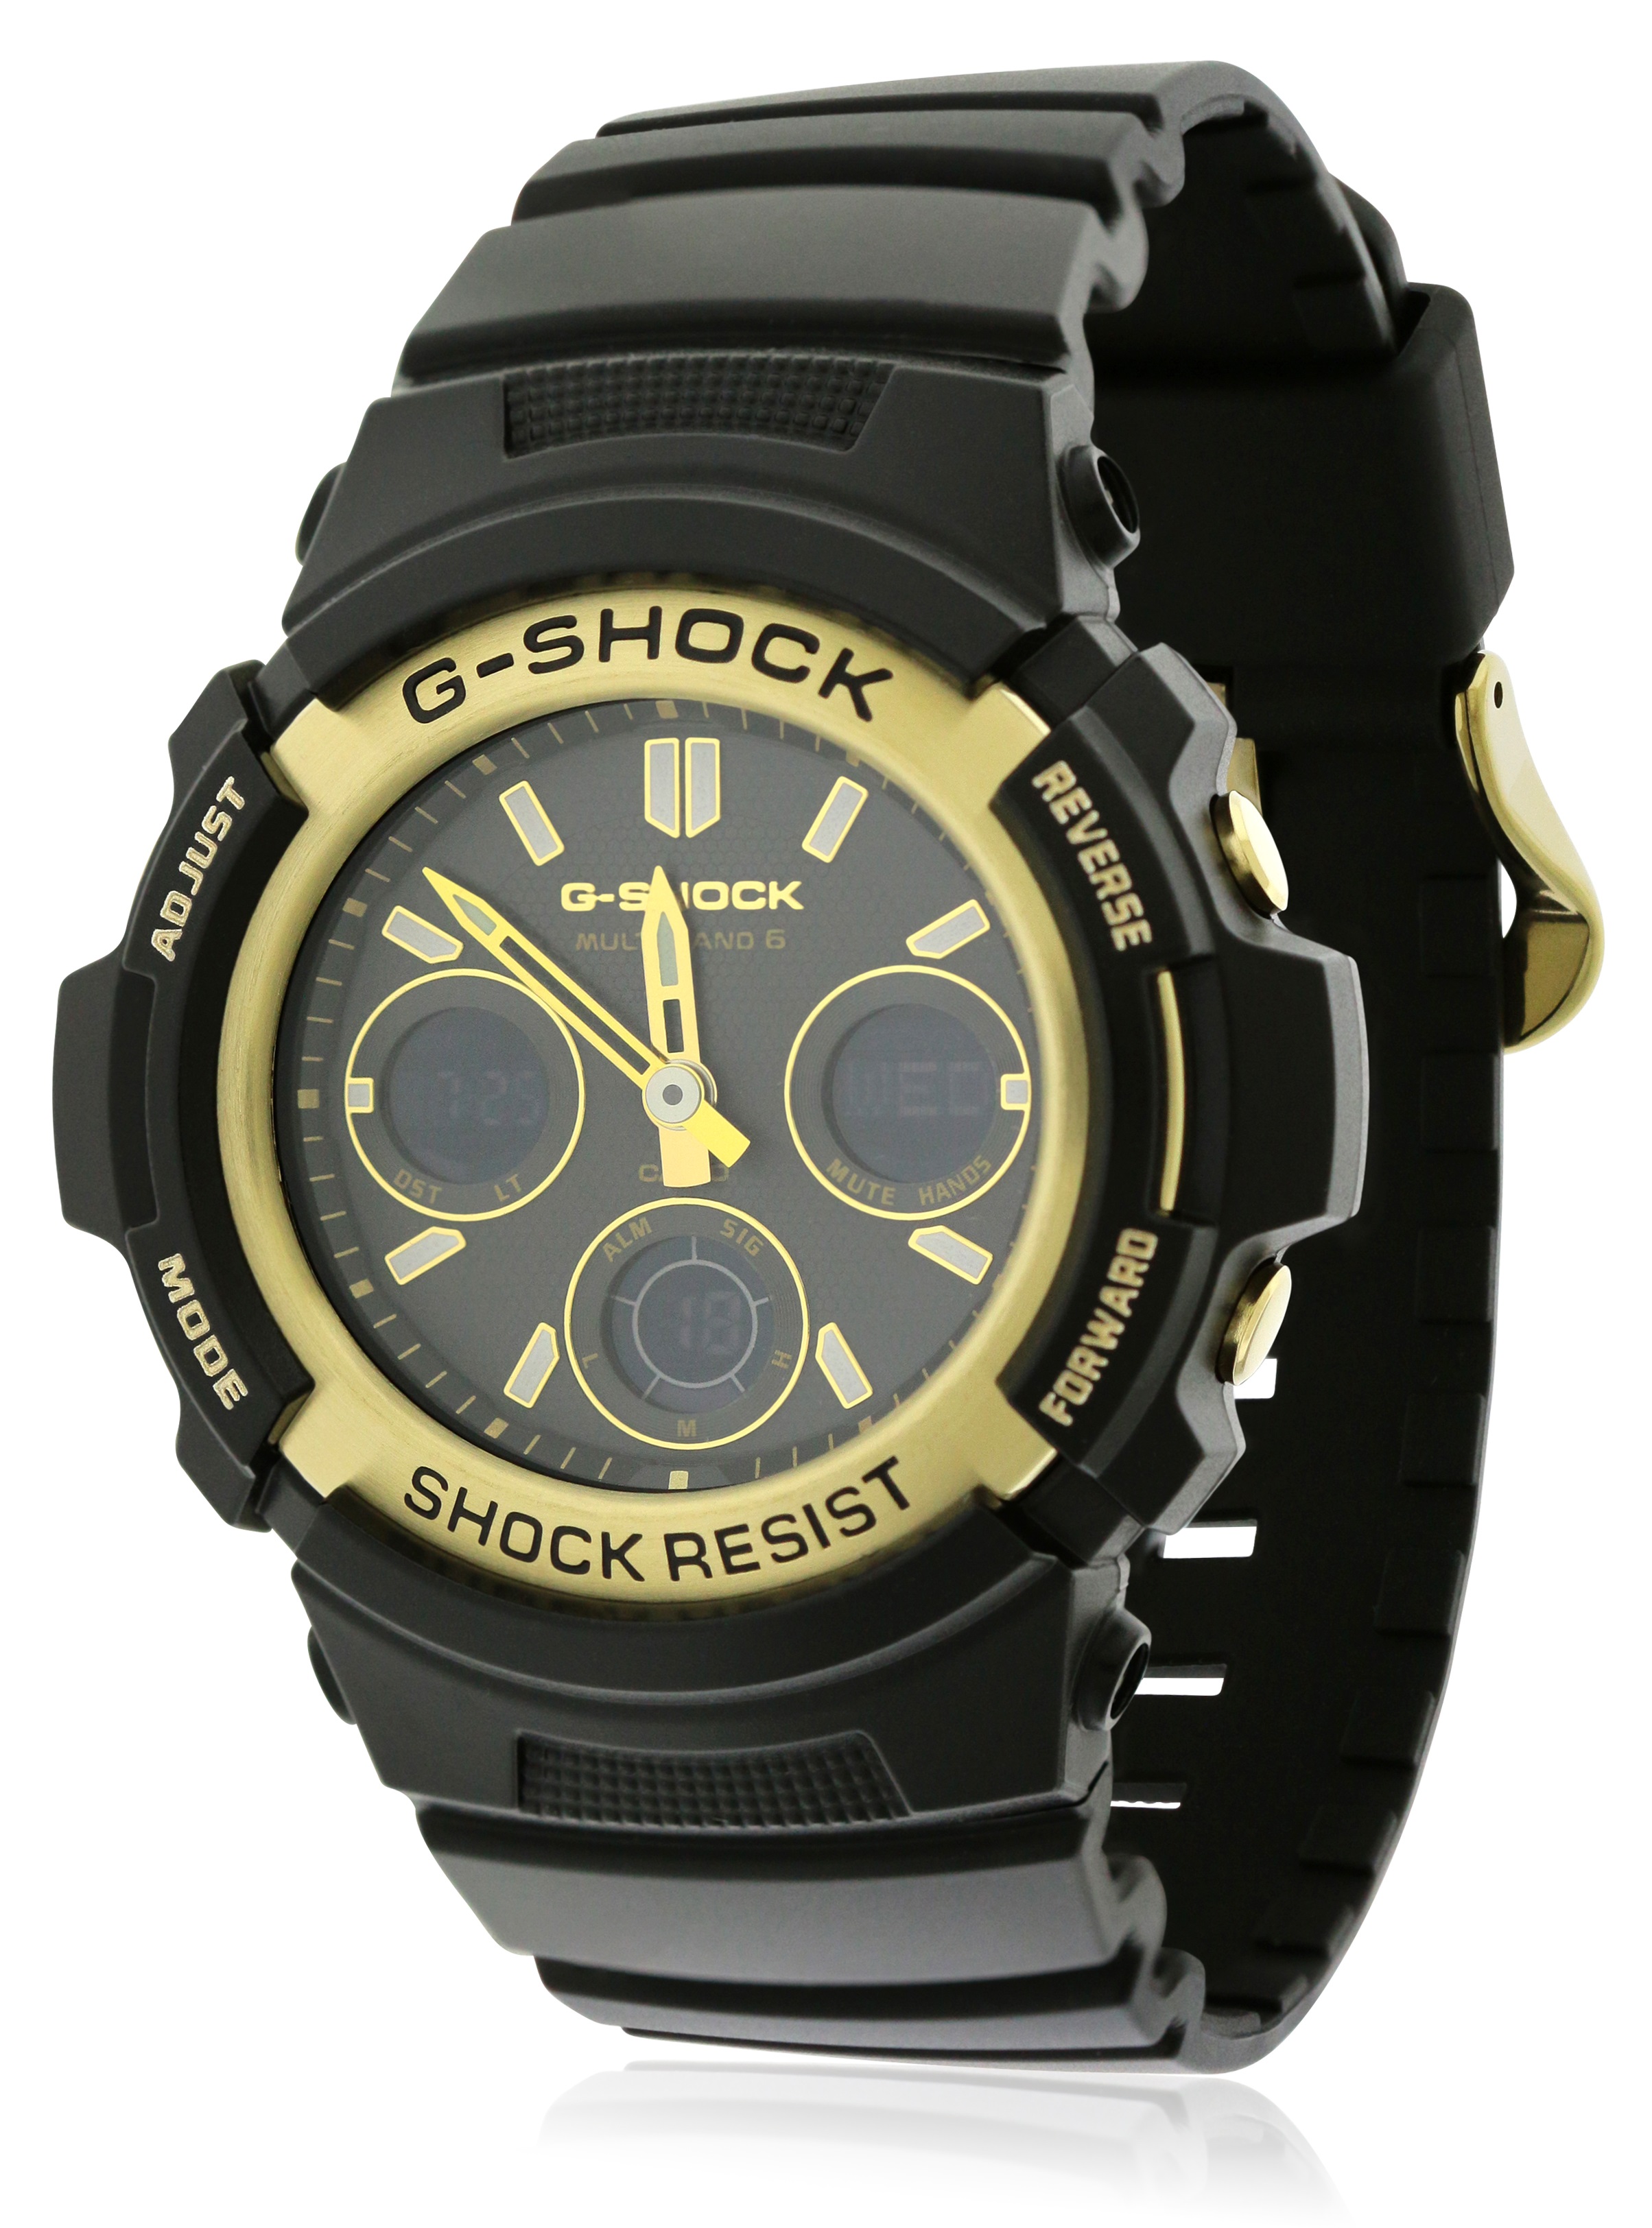 Casio Tough Solar G Shock Watch Manual